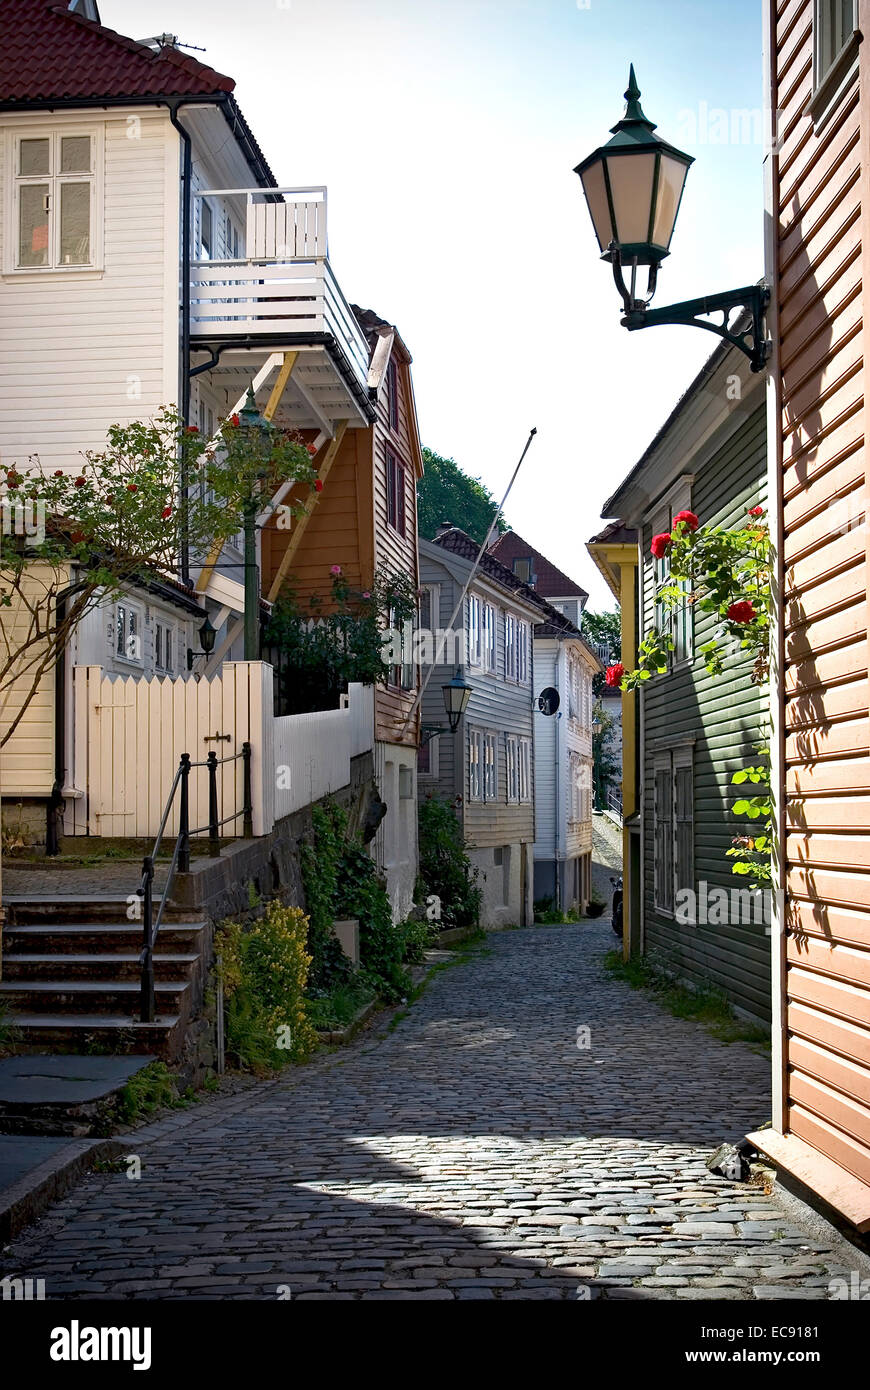 Questo è un dettaglio immagine del centro storico di case di legno nella città vecchia di Bergen, nella seconda città più grande della Norvegia. Nella parte anteriore è tw Foto Stock